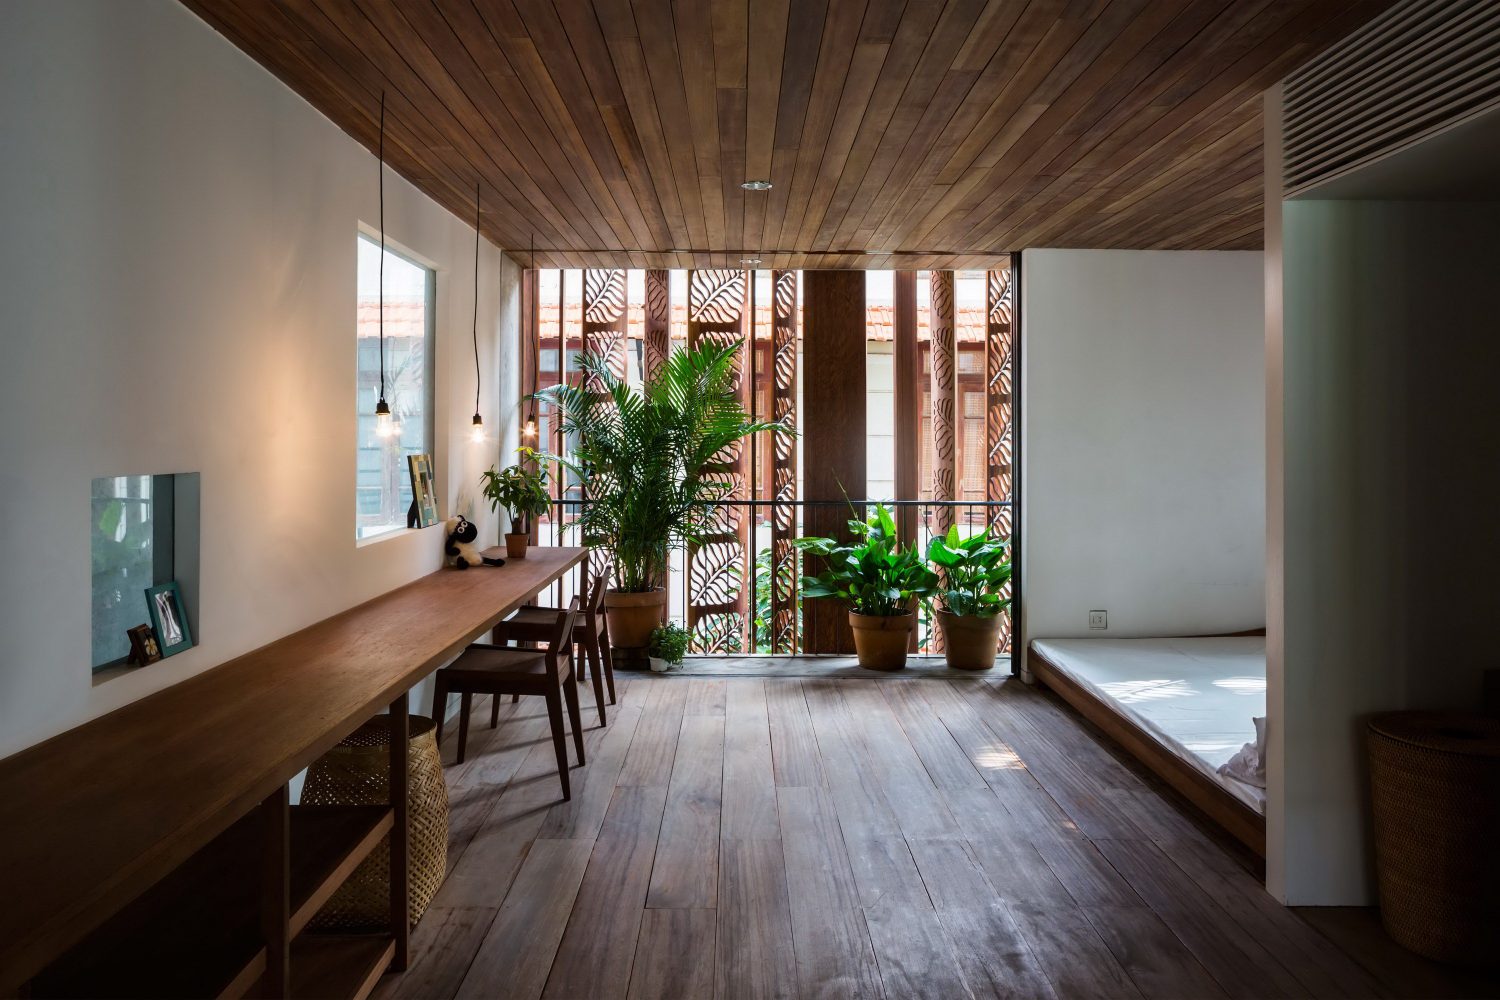 Thong House by Nishizawa Architects